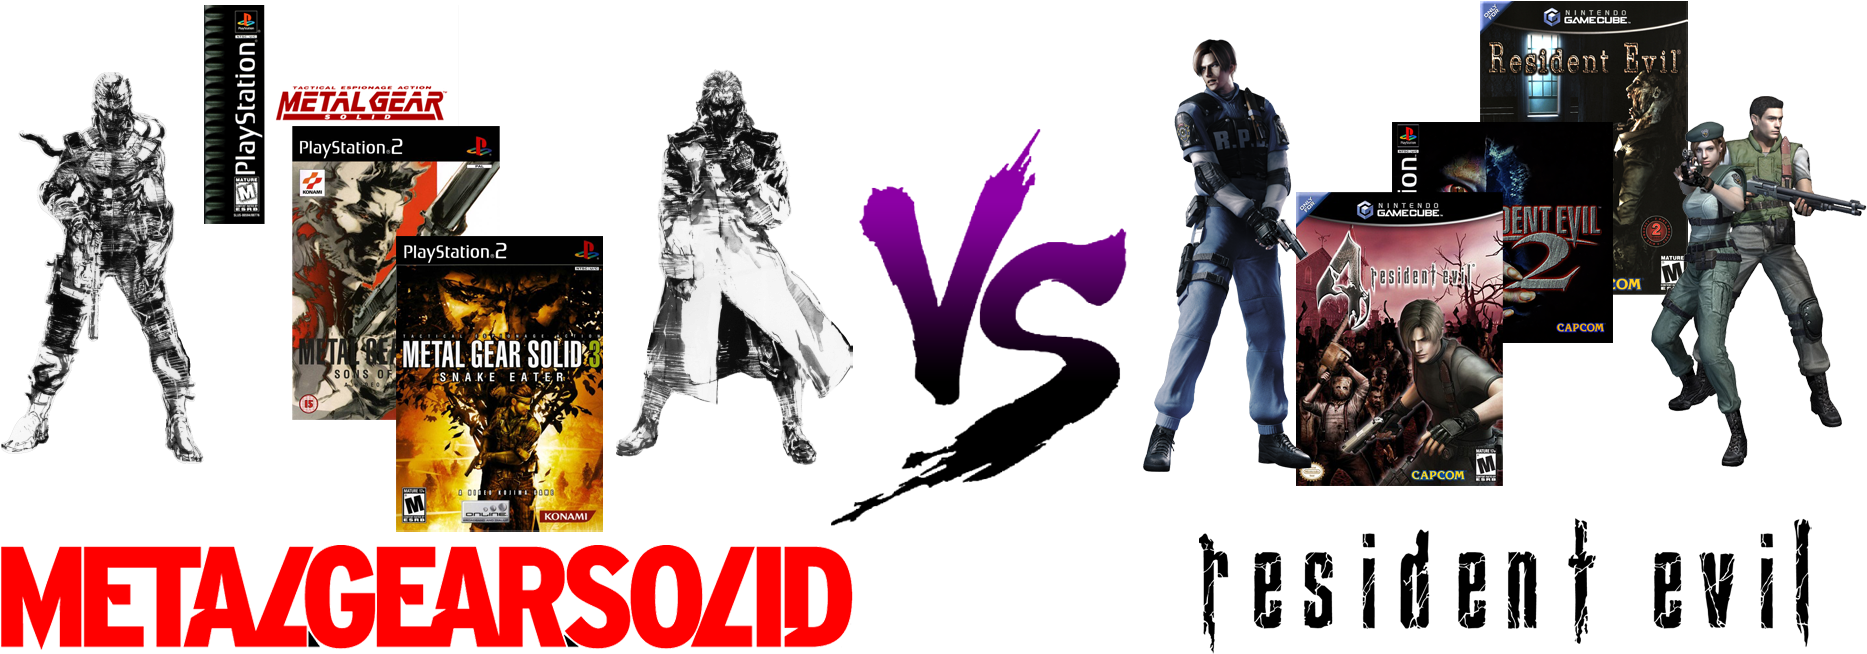 Metal Gear Solid V S Resident Evil Comparison PNG